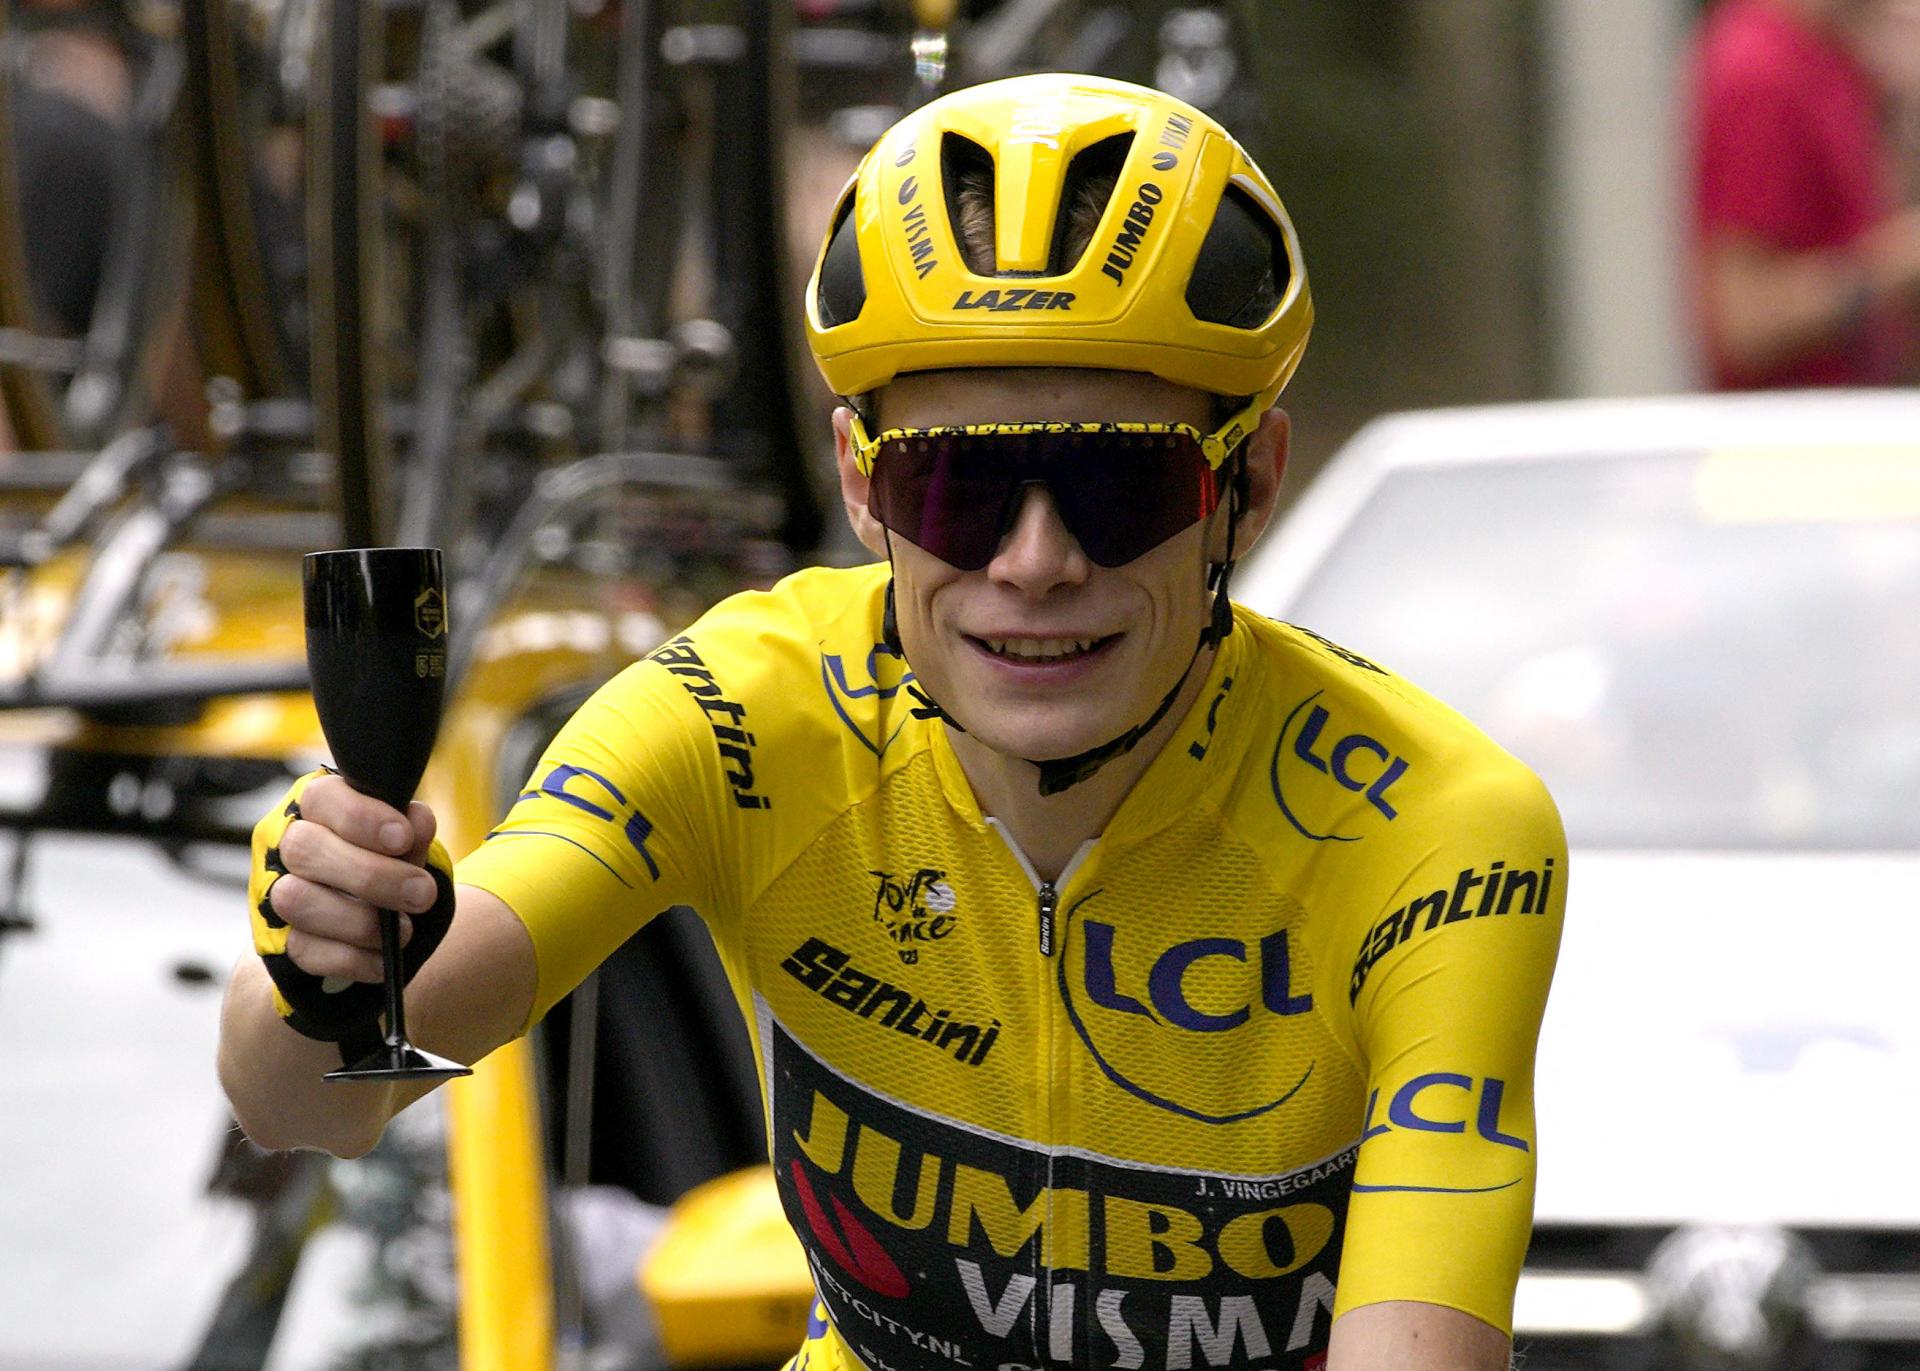 Vingegaard spečatil obhajobu triumfu na Tour de France. Sagan skončil v Paríži jedenásty